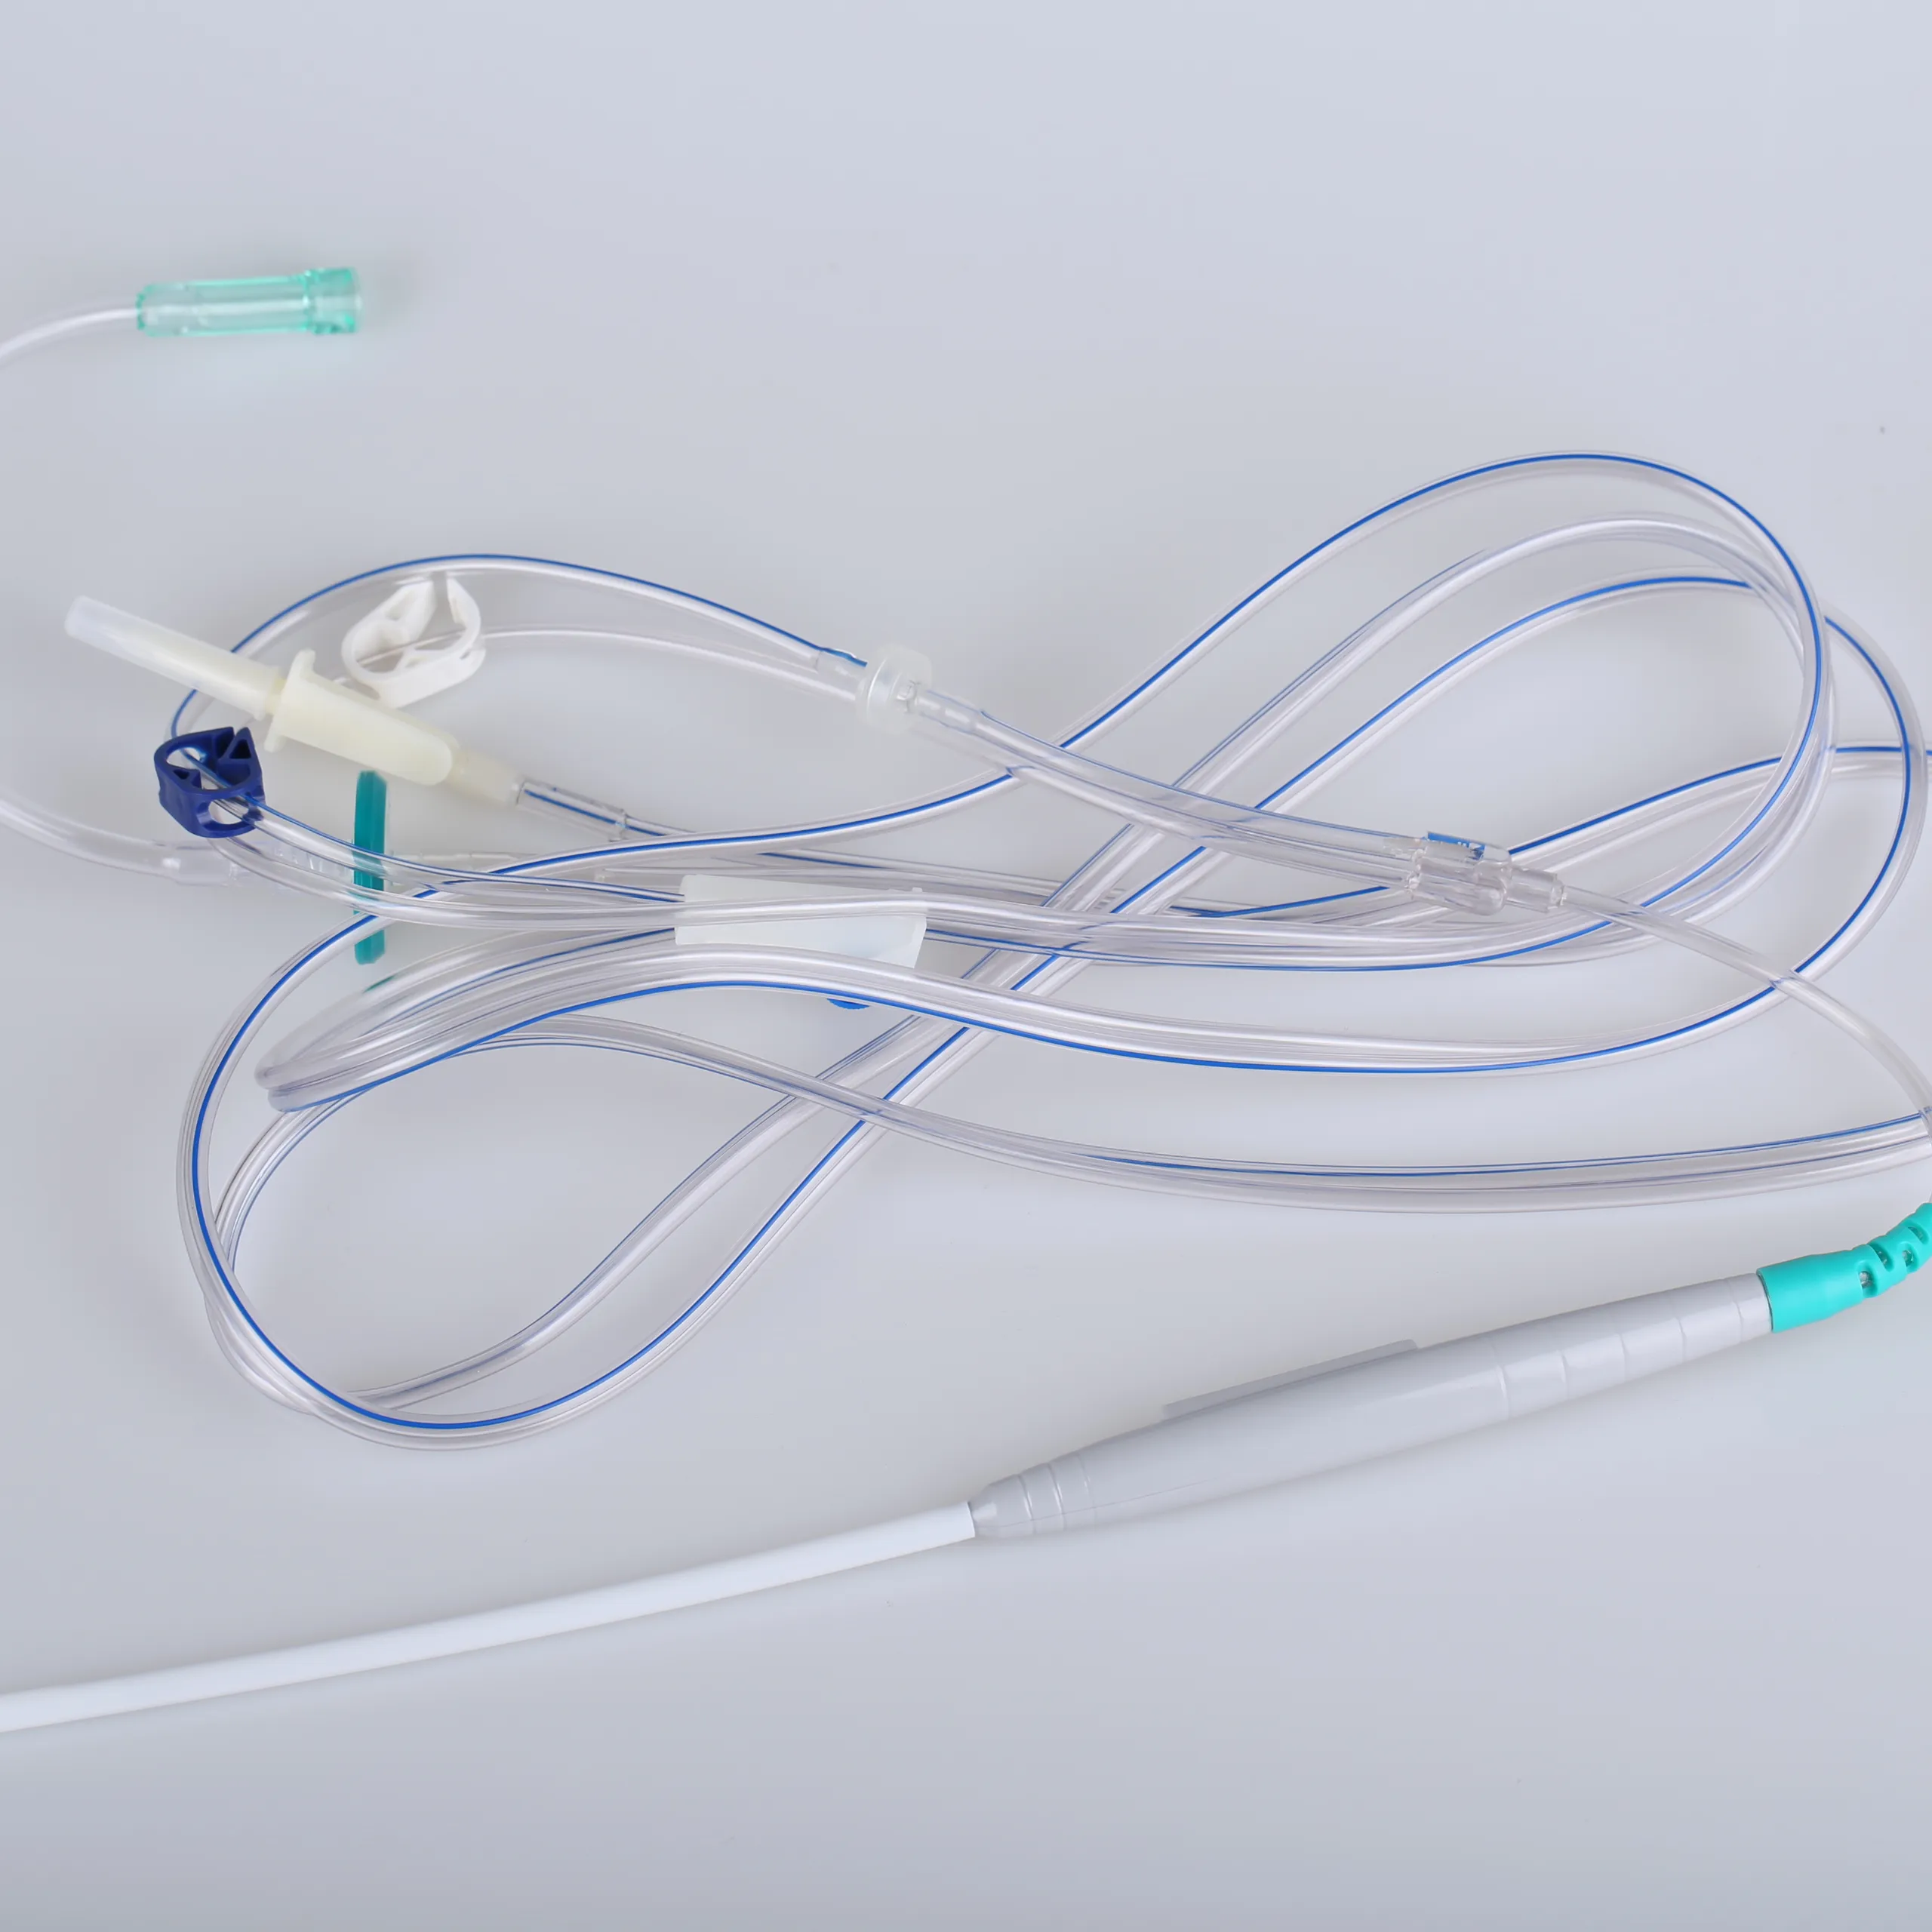 O ventilador/senhor instrumentos descartáveis da cardiologia com CE aprovou o equipamento médico para o hospital ou a clínica